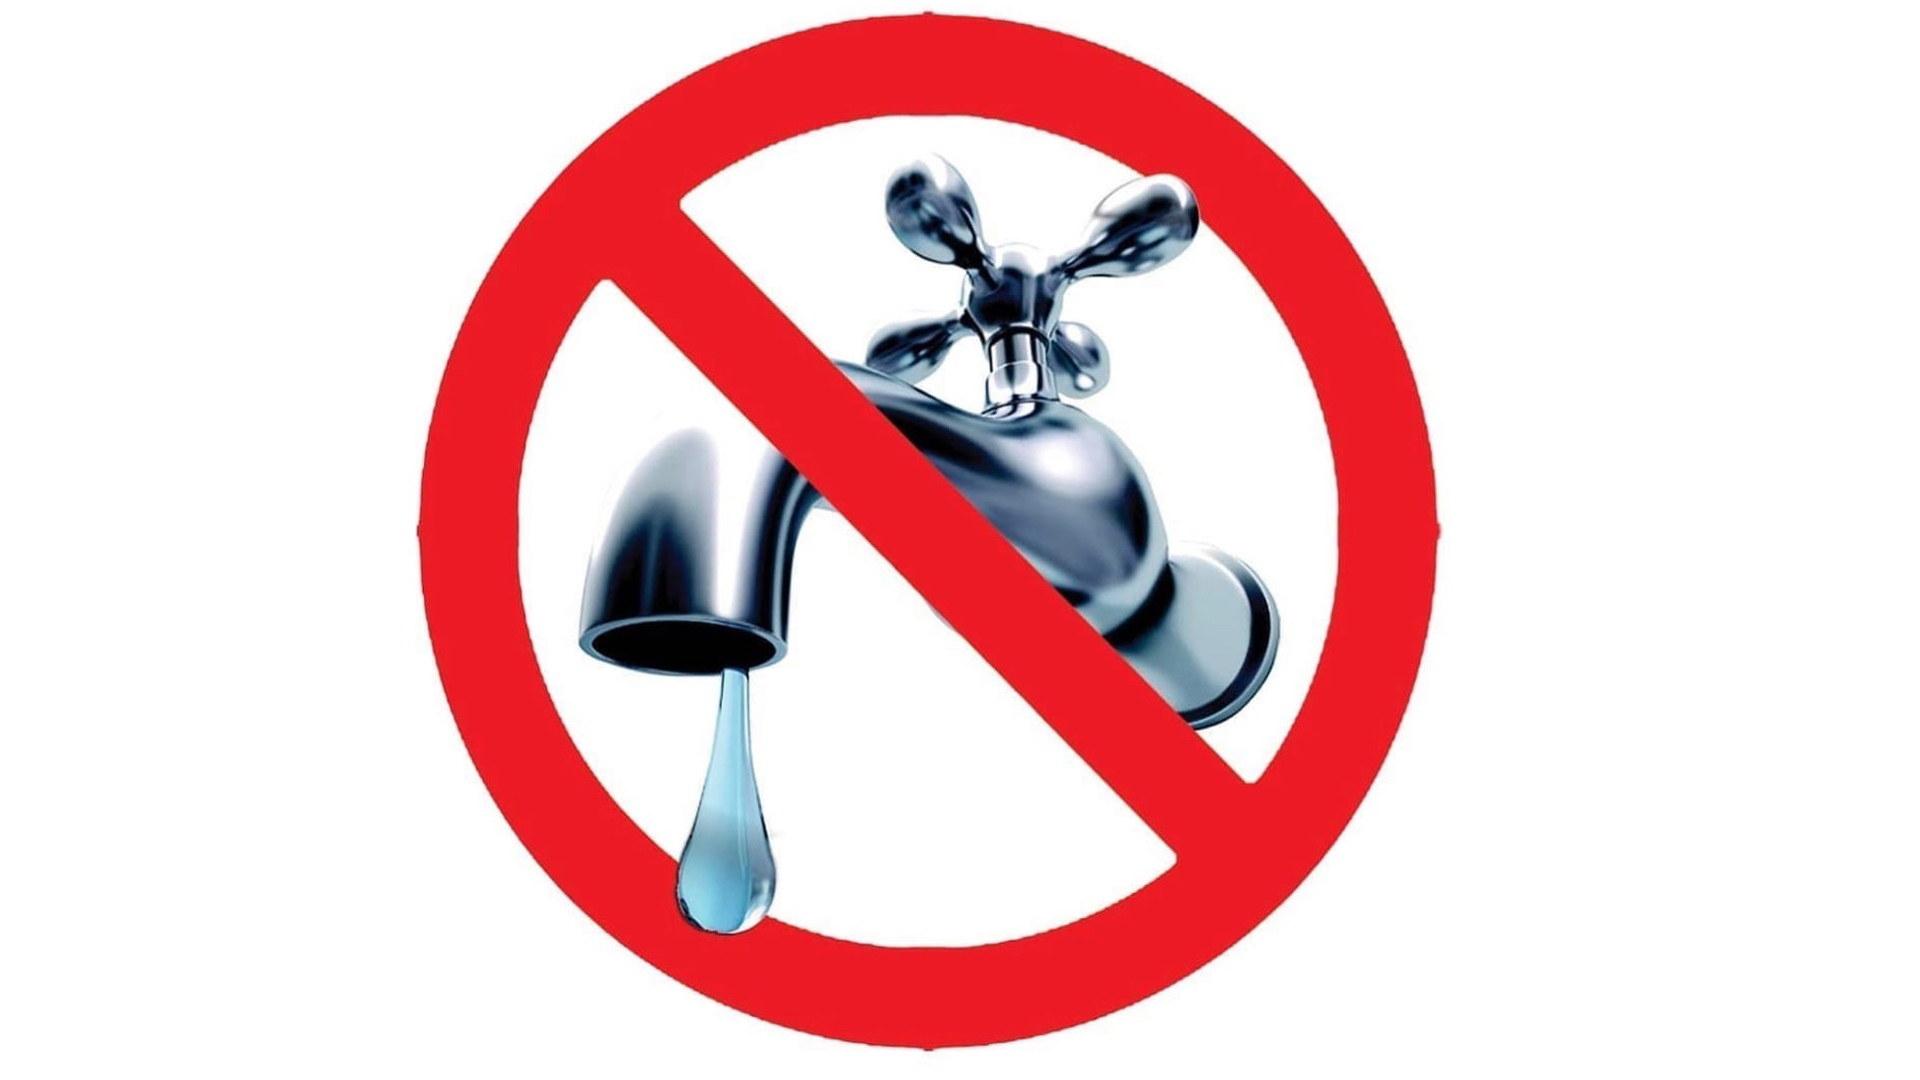 Уходя закрой воду. Знак нет воды. Перечеркнутый водопроводный кран. Отключение водоснабжения. Выключайте воду.